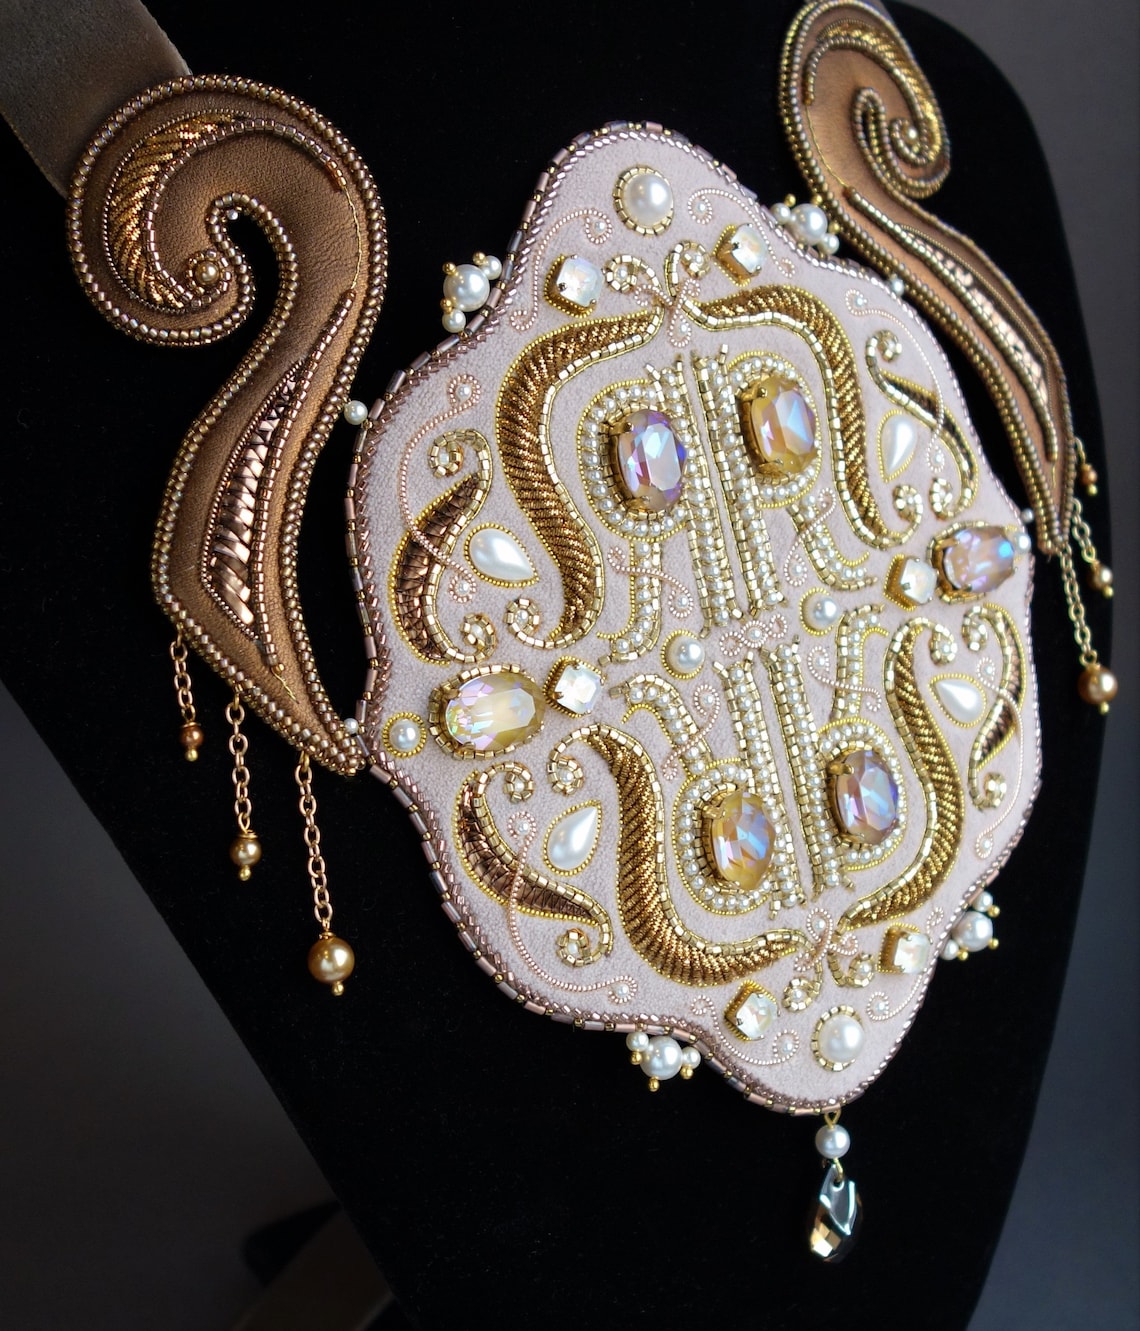 Necklace LOUIS XIV Gift statement necklaces Plus size fashion | Etsy